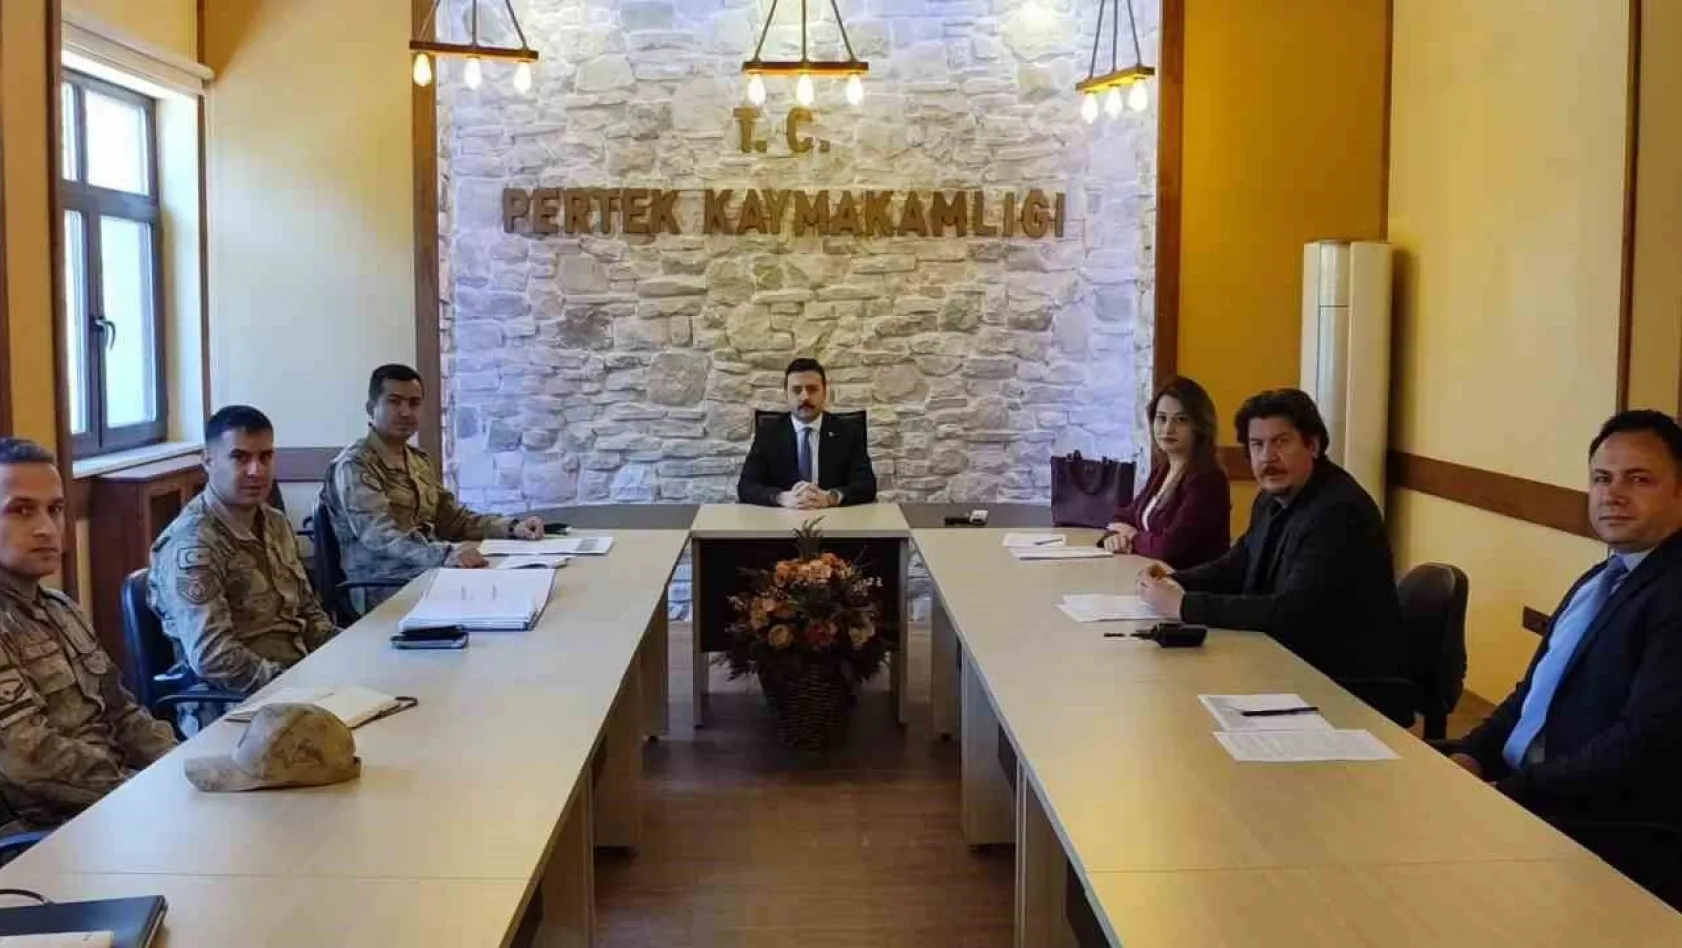 Pertek'te 'seçim güvenliği toplantısı' yapıldı